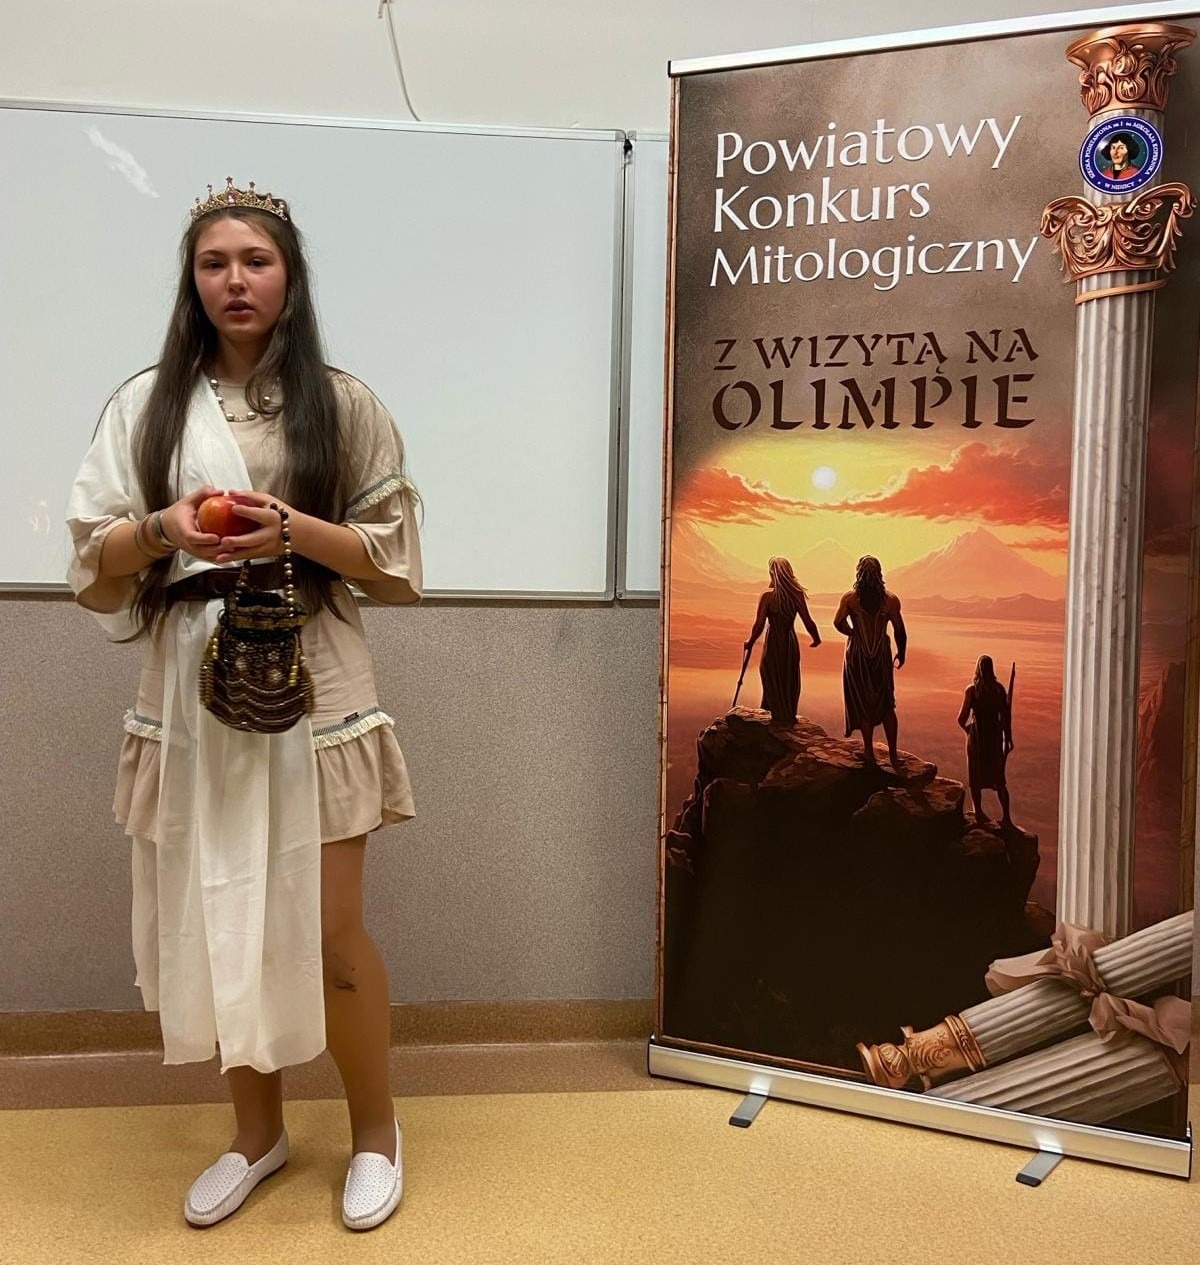 Powiatowy Konkurs Mitologiczny "Z wizytą na Olimpie" w SP1 w Nidzicy - Obrazek 1